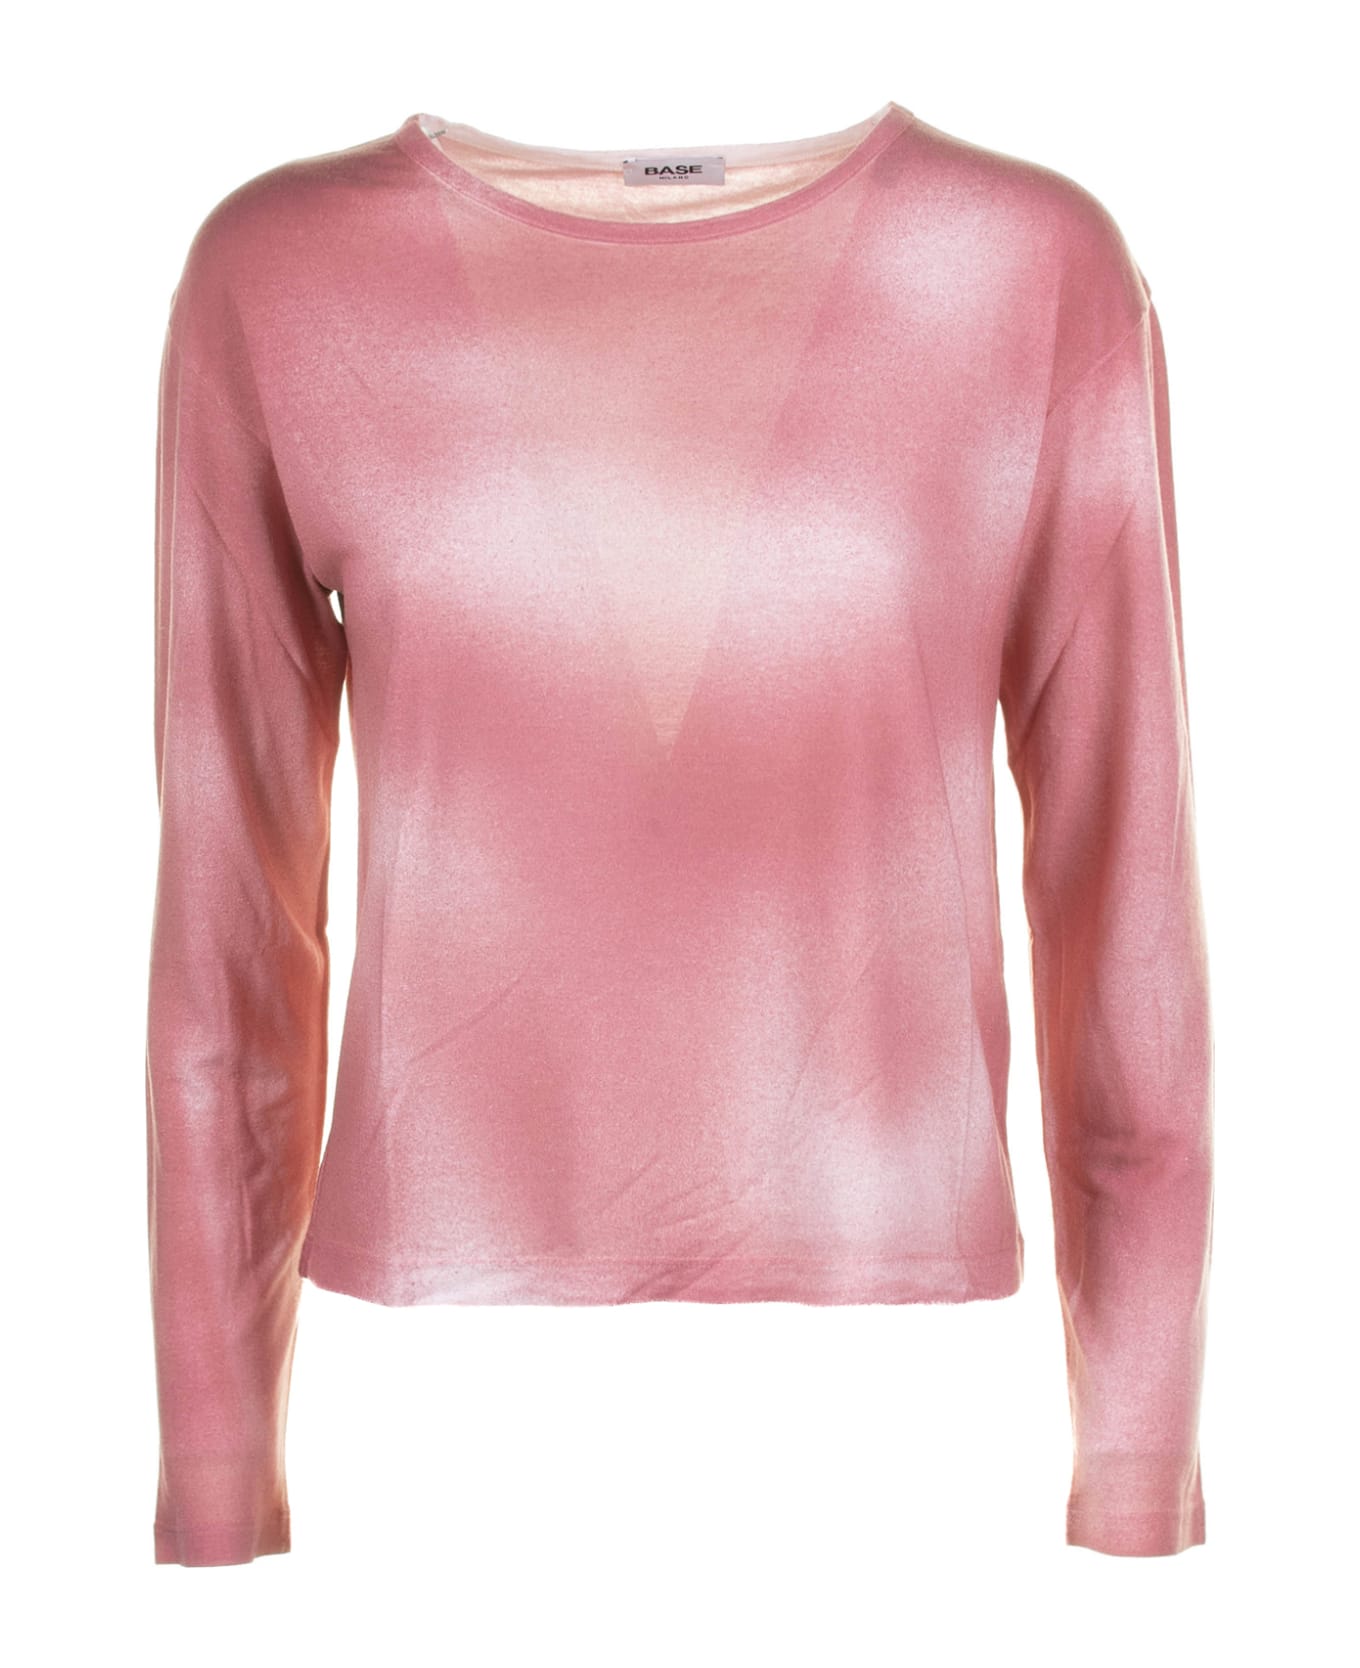 Base Pink Long-sleeved Shirt - ROSA Tシャツ